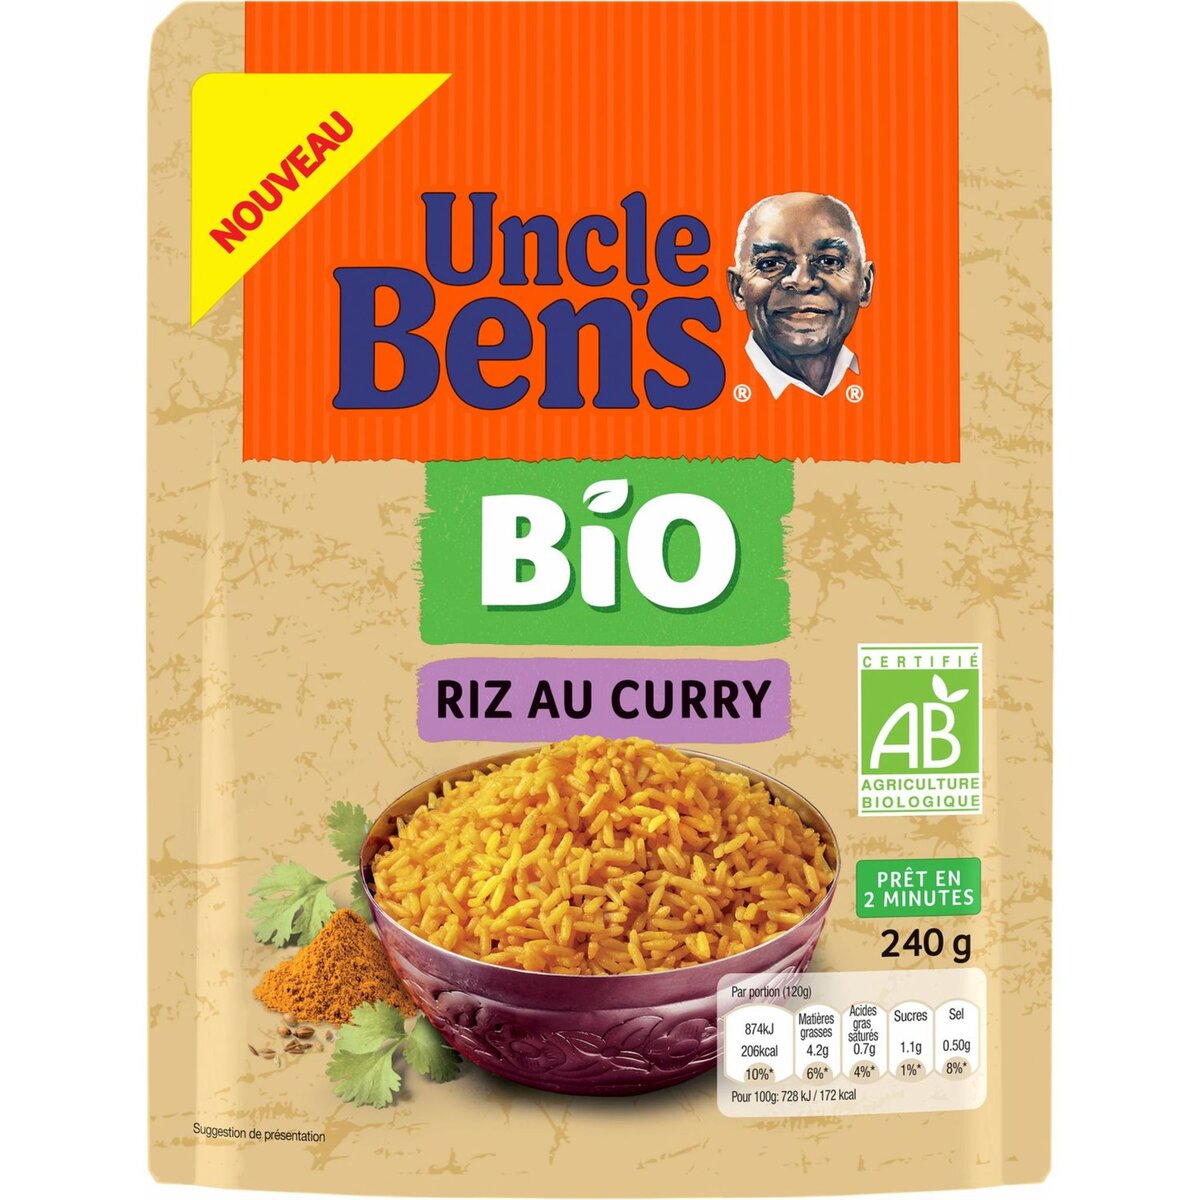 BEN'S ORIGINAL - Riz au Curry et Légumes